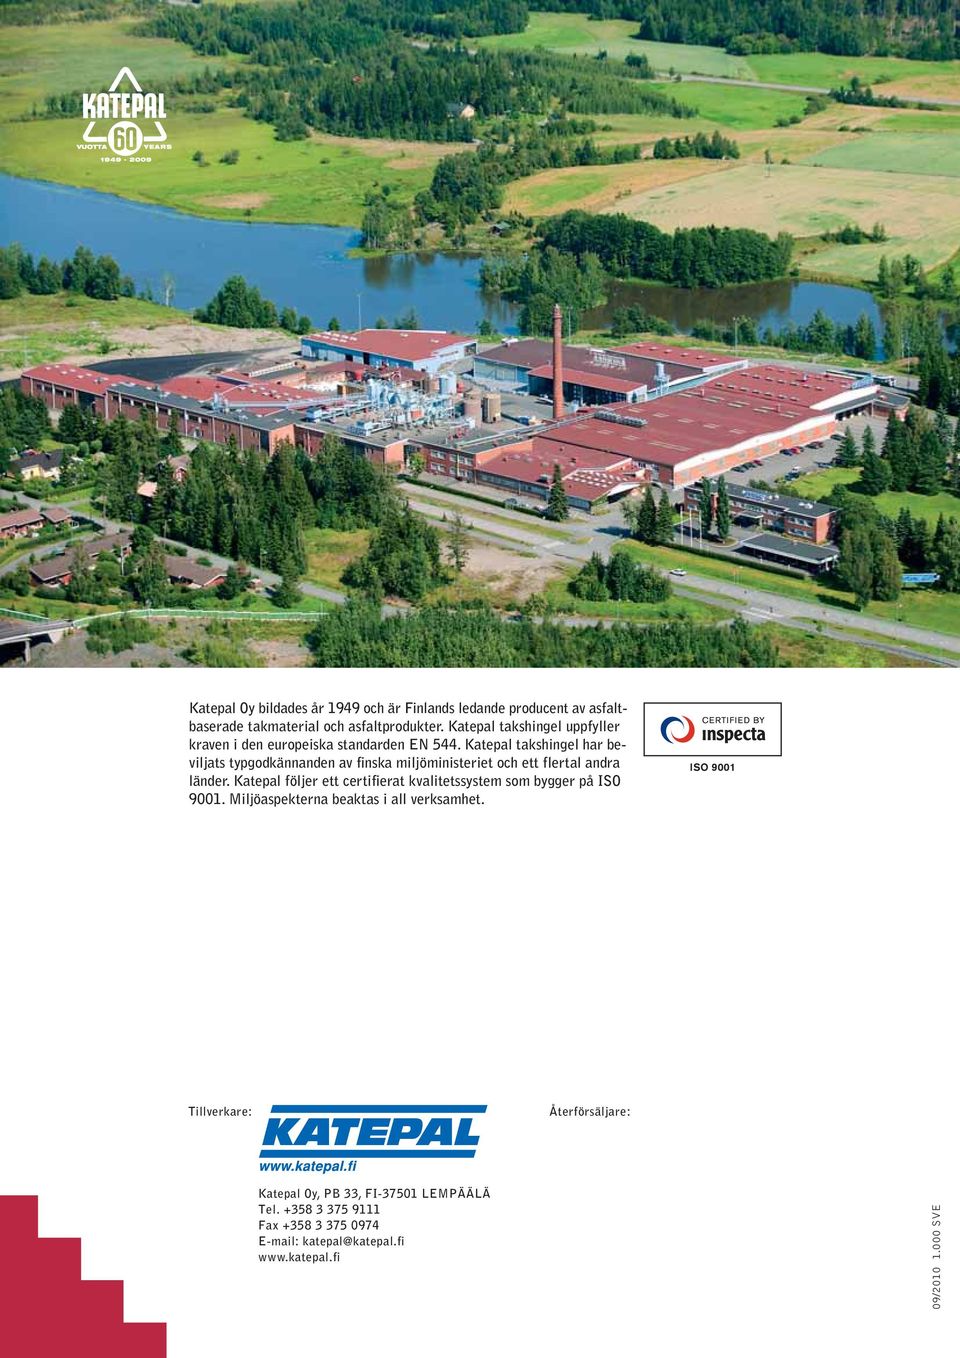 Katepal takshingel har beviljats typgodkännanden av finska miljöministeriet och ett flertal andra länder.